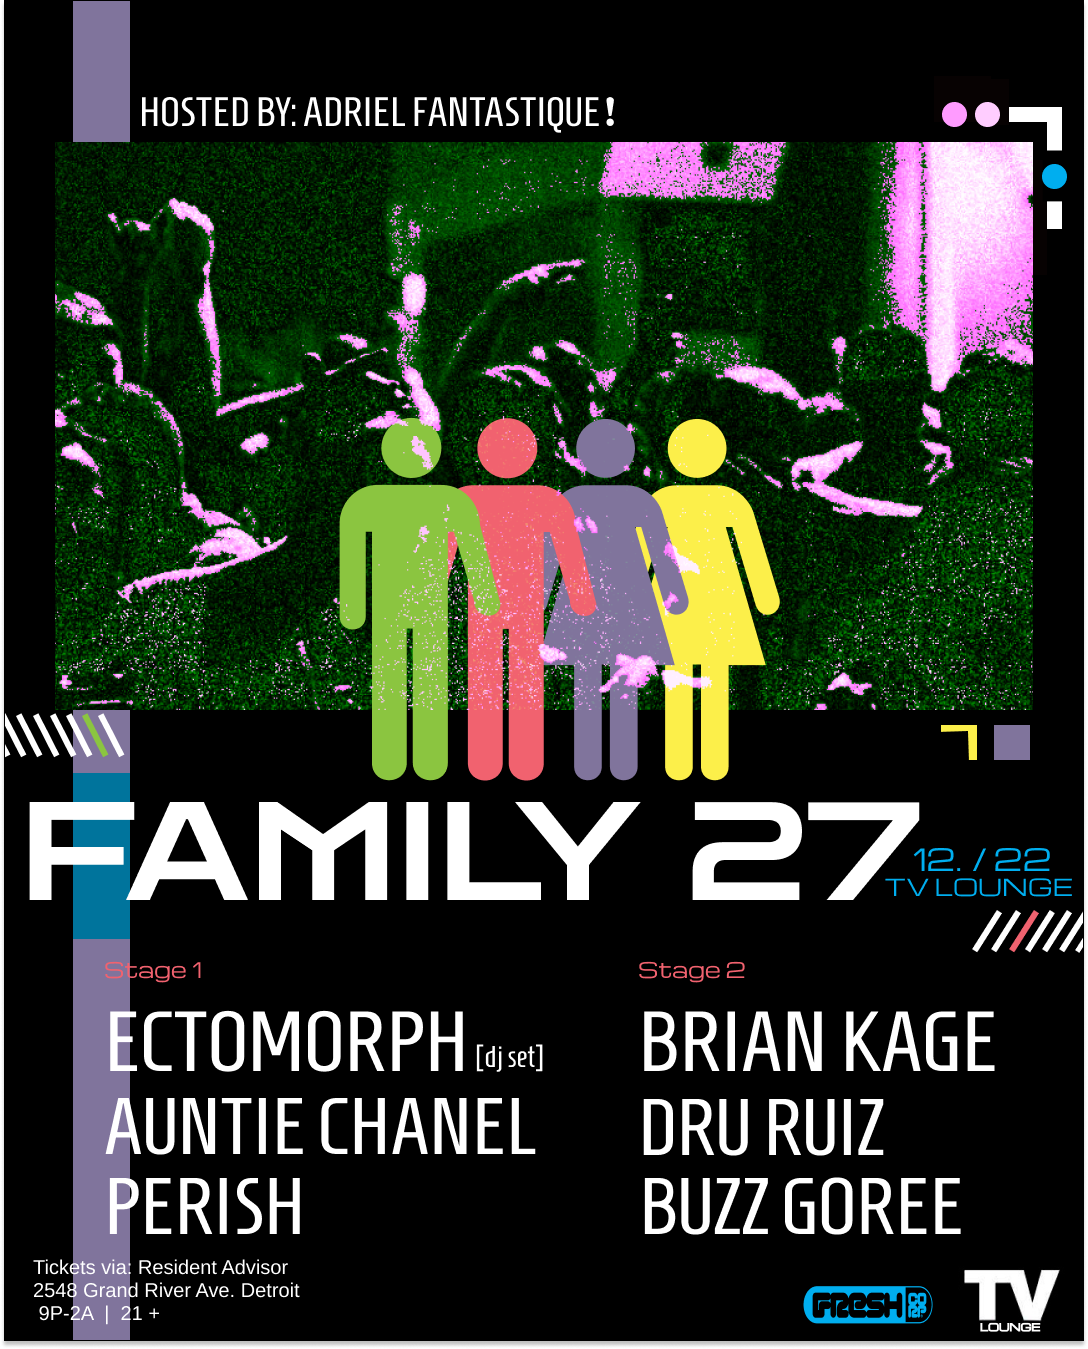 FAMILY 27 - Página frontal